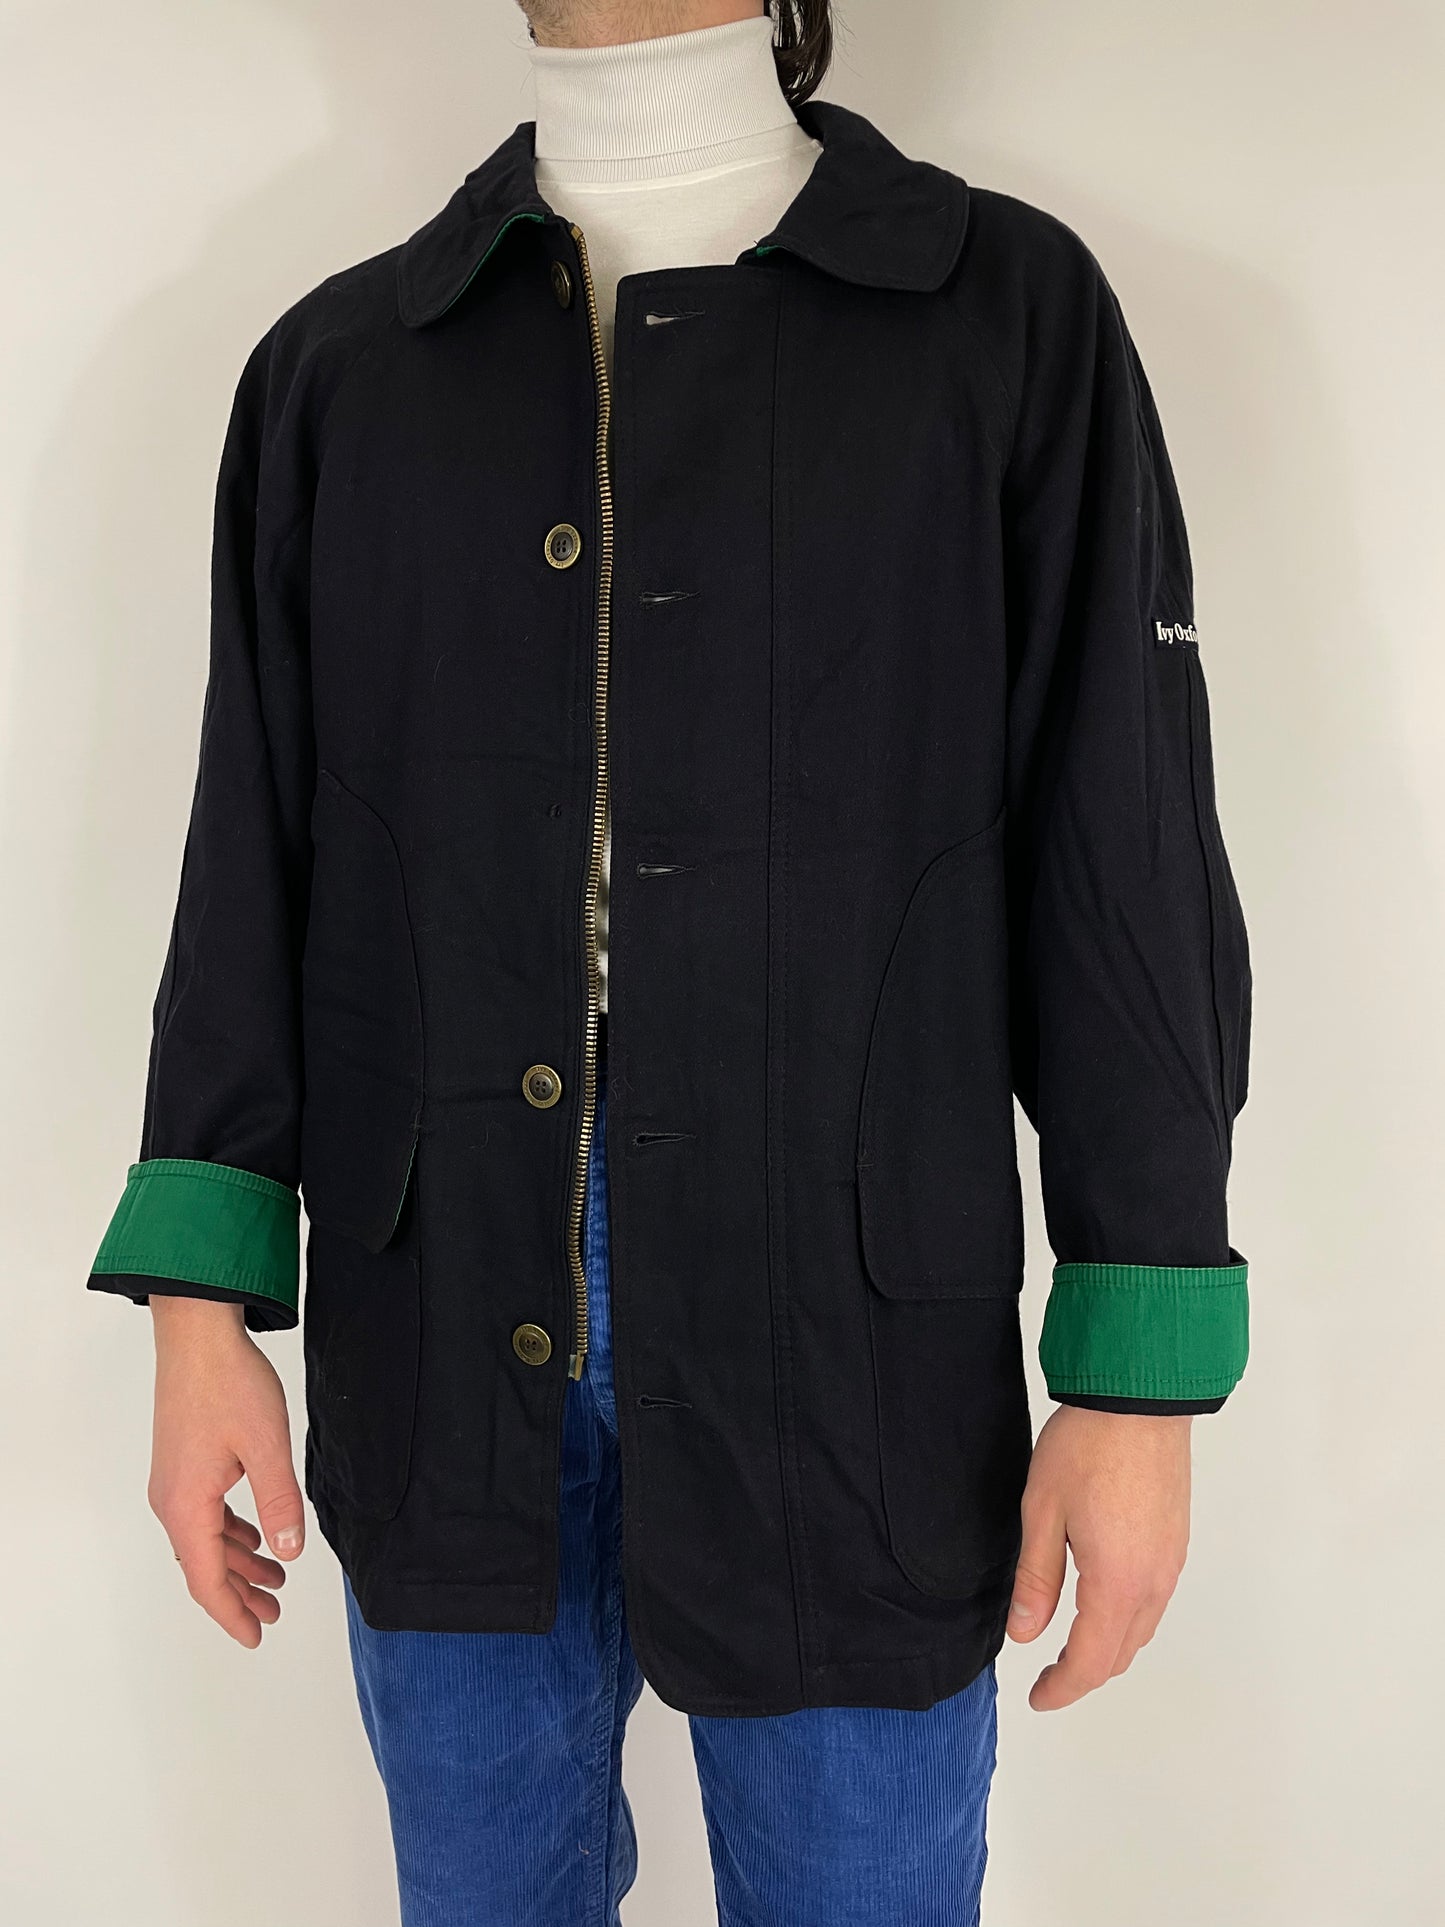 Ivy Oxford jacket